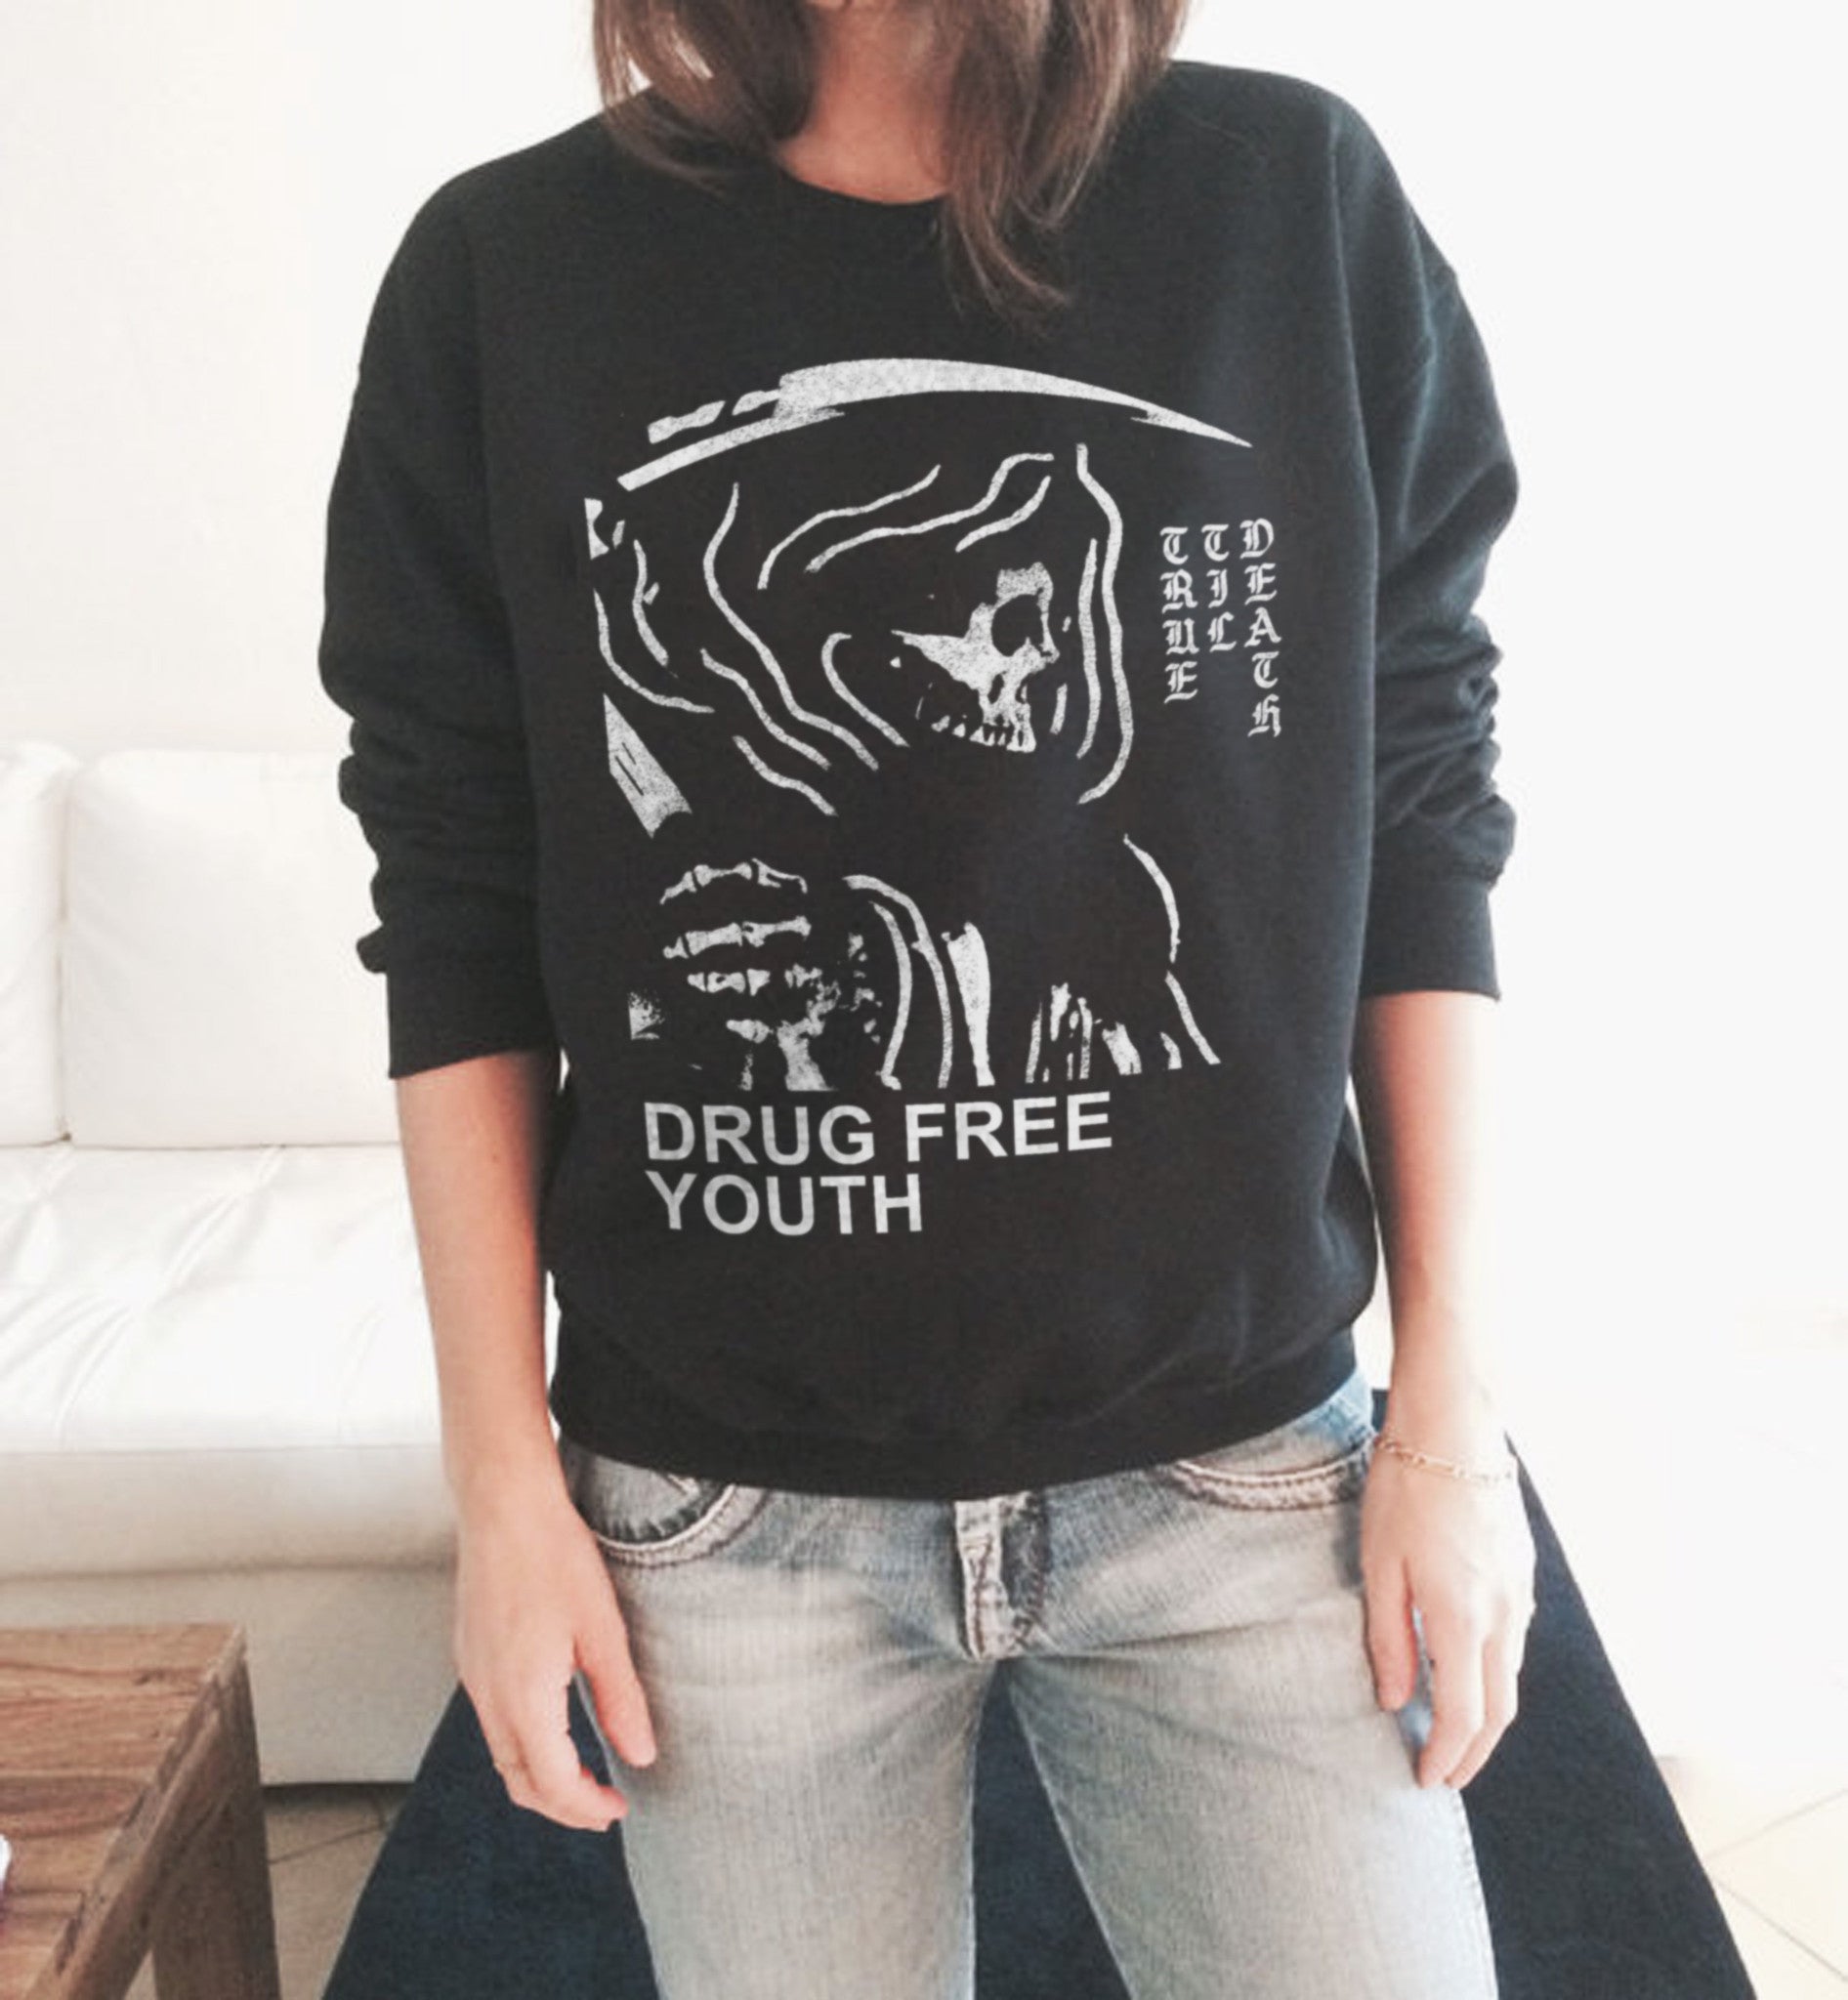 Drug Free Youth sweatshirt in black